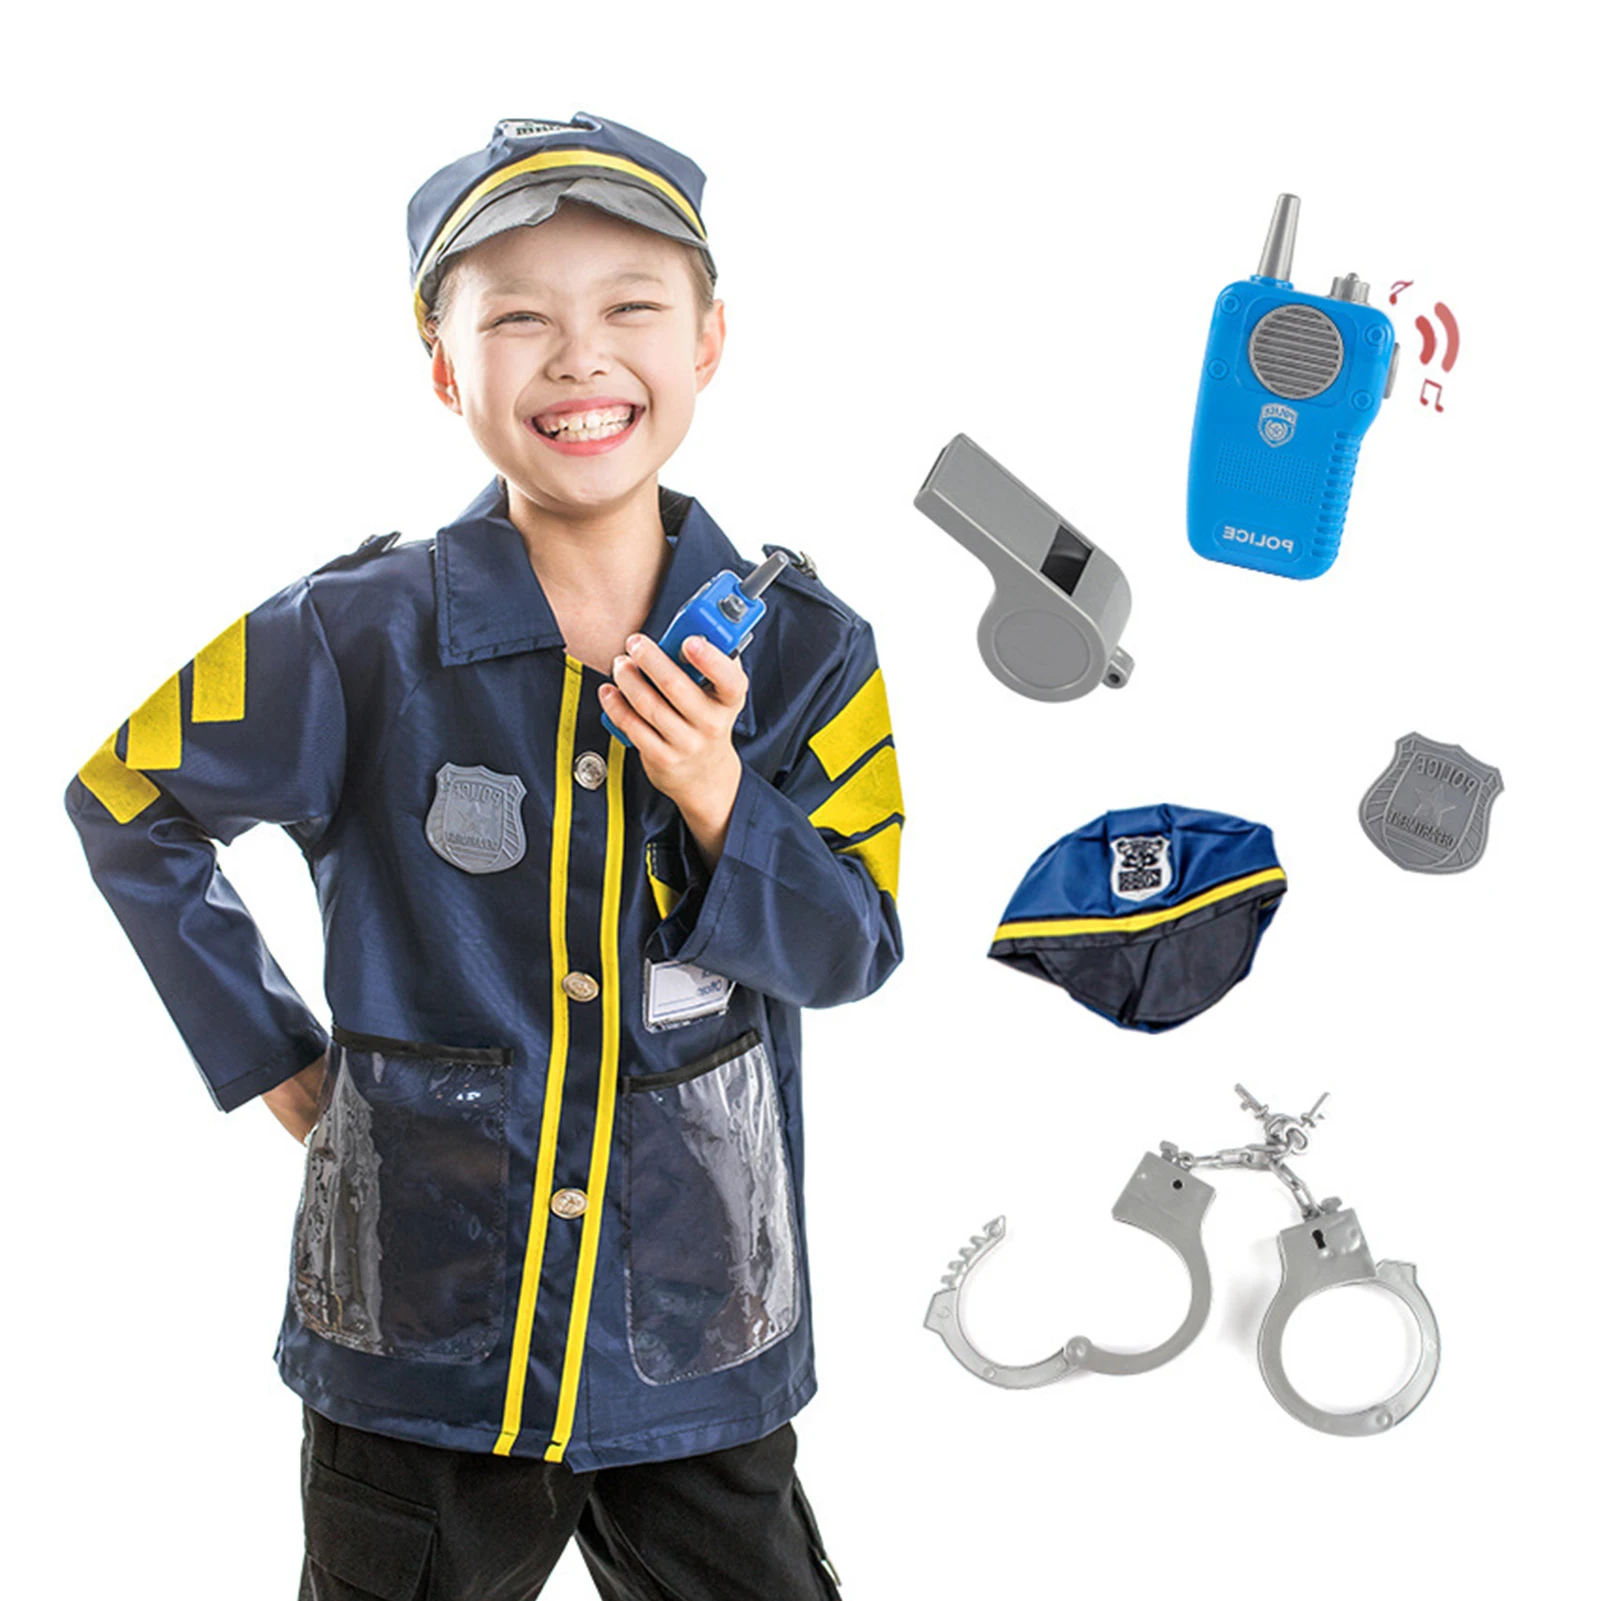 

Костюм полицейского офицера мальчика для косплея, комплект униформы полицейского, комплект рубашки, шапки, свисток, реалистичный костюм дл...